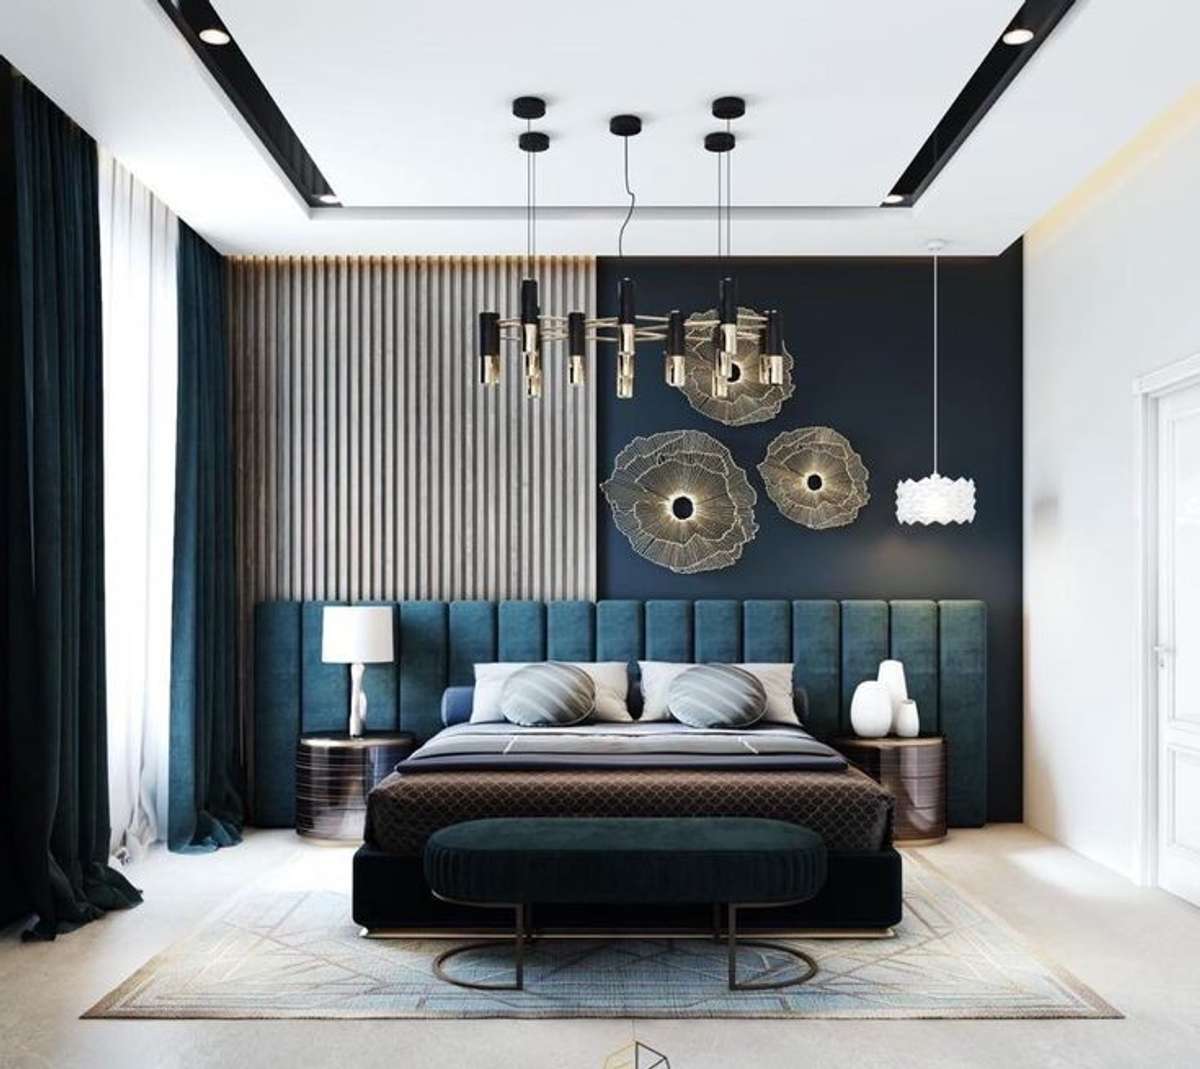 Furniture, Bedroom Designs by Interior Designer paridhi rai, Jaipur | Kolo